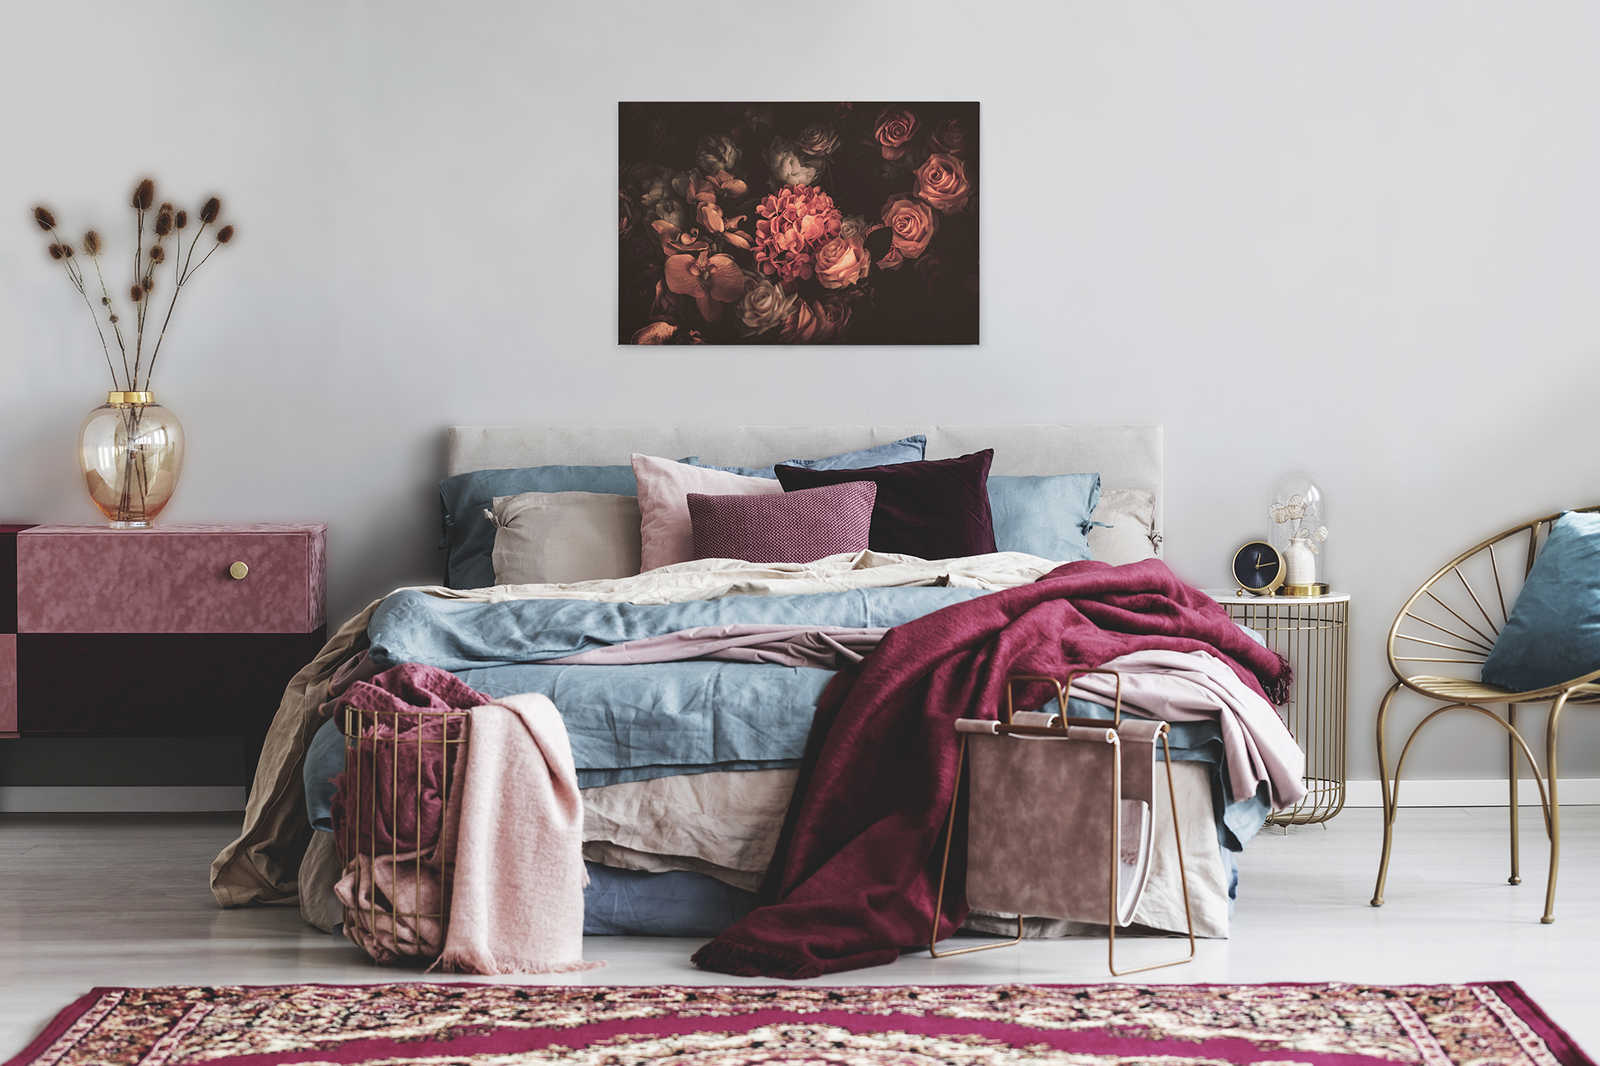             Romantisch canvas met boeket bloemen - 0,90 m x 0,60 m
        